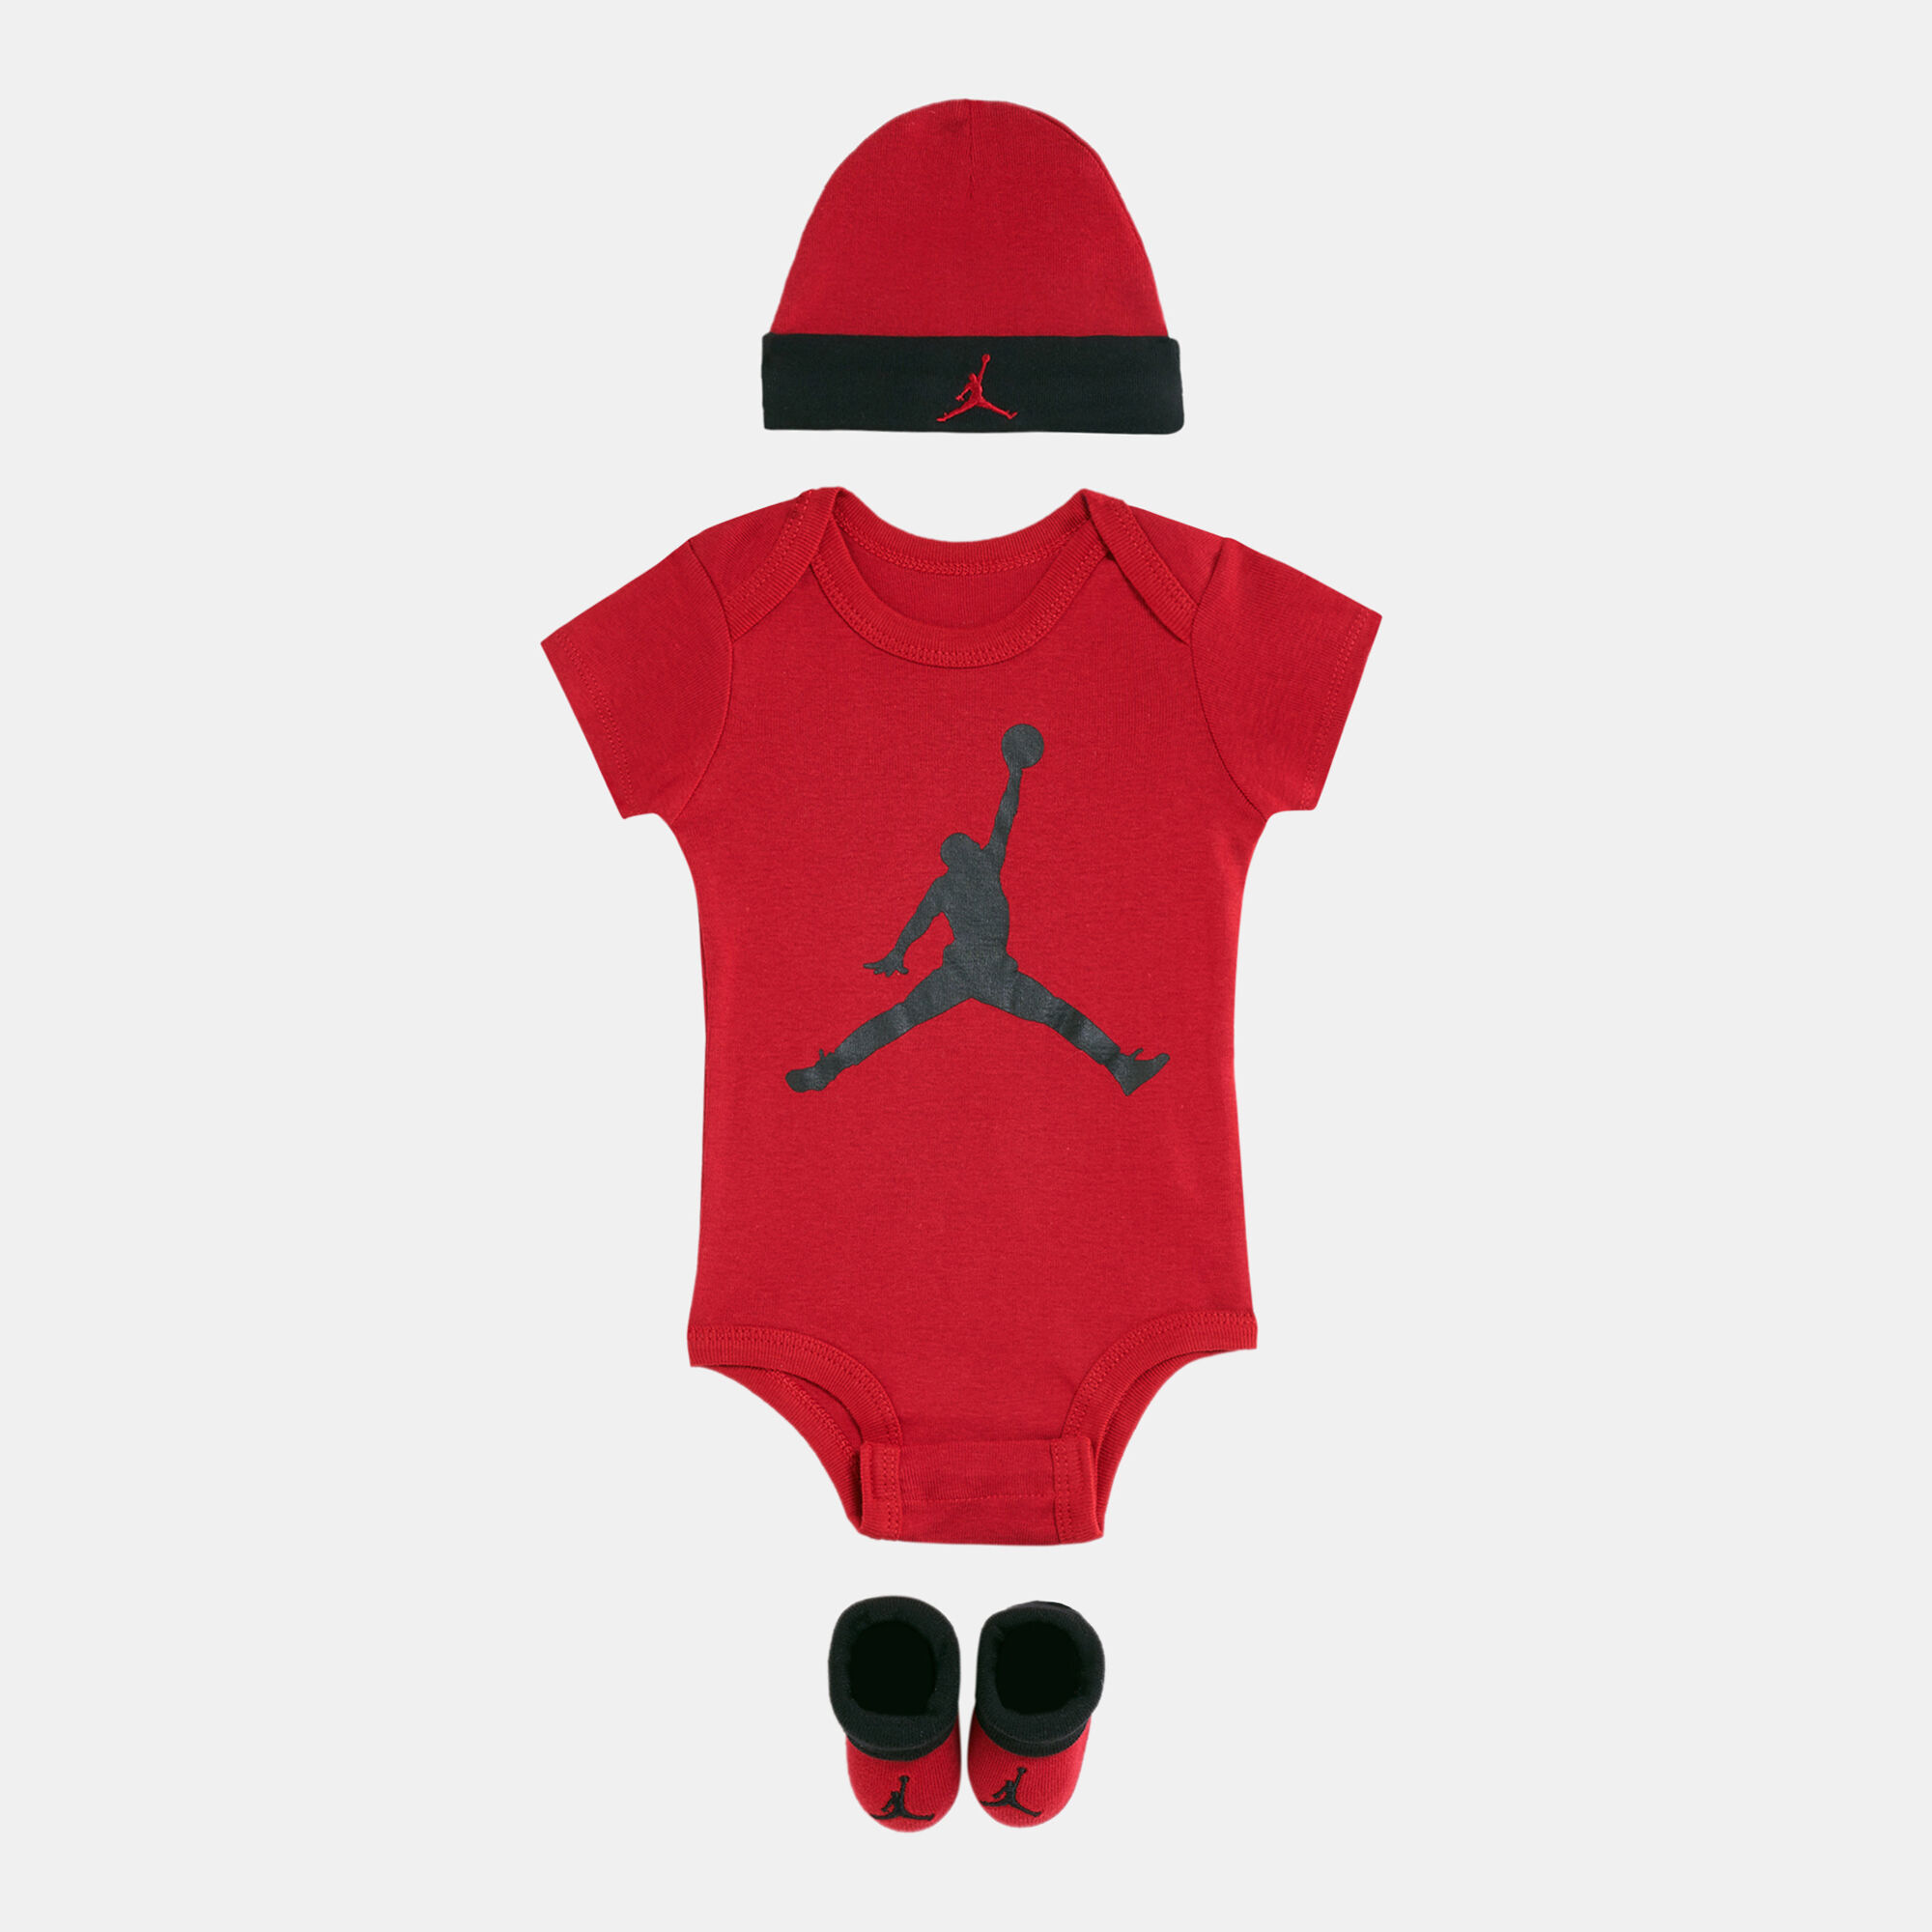 Buy Jordan Kids' Jumpman Set (Baby and Toddler) in Dubai, UAE | SSS